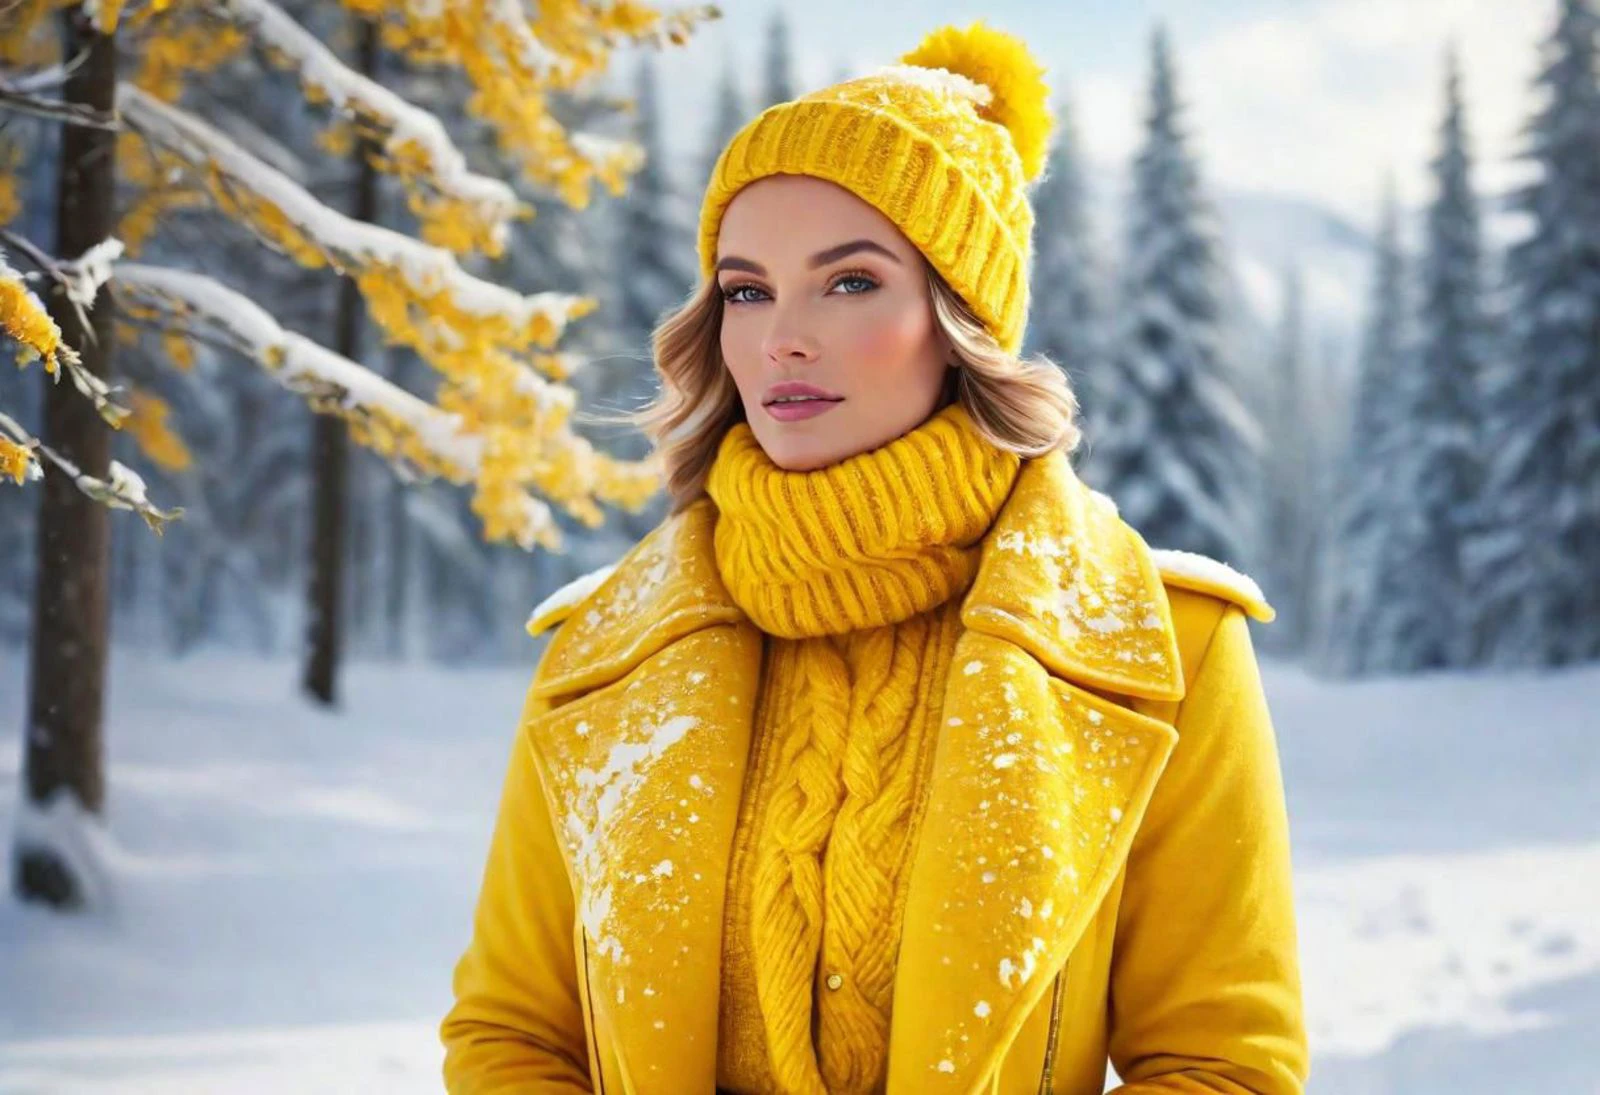 "製作一幅以充滿活力的黃色的迷人女性為主題的圖像, 體現黃隊冬季的精髓. 想像一下她穿著冬裝優雅的場景, 被雪景和冰冷的環境所包圍. 點亮季節之美，在冬日背景下展現黃隊活力四射的精神."